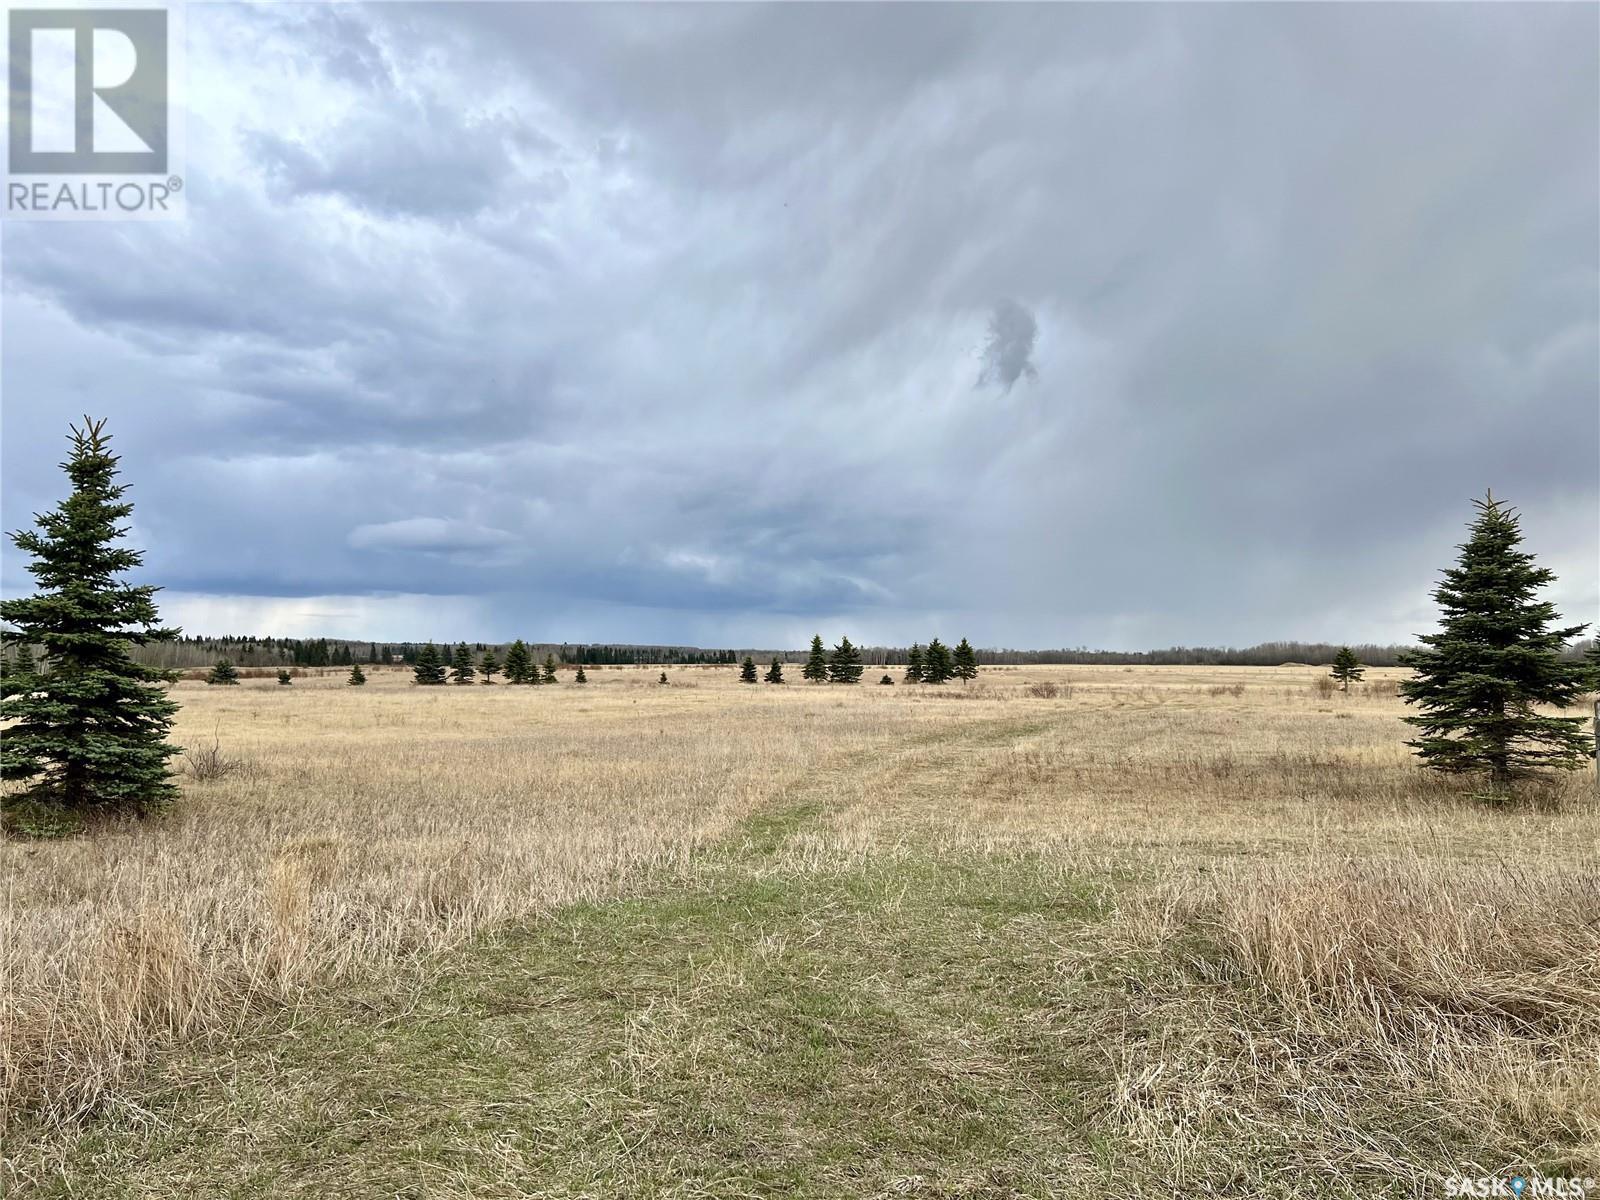 97 Acres SW of Meadow Lake, meadow lake rm no.588, Saskatchewan